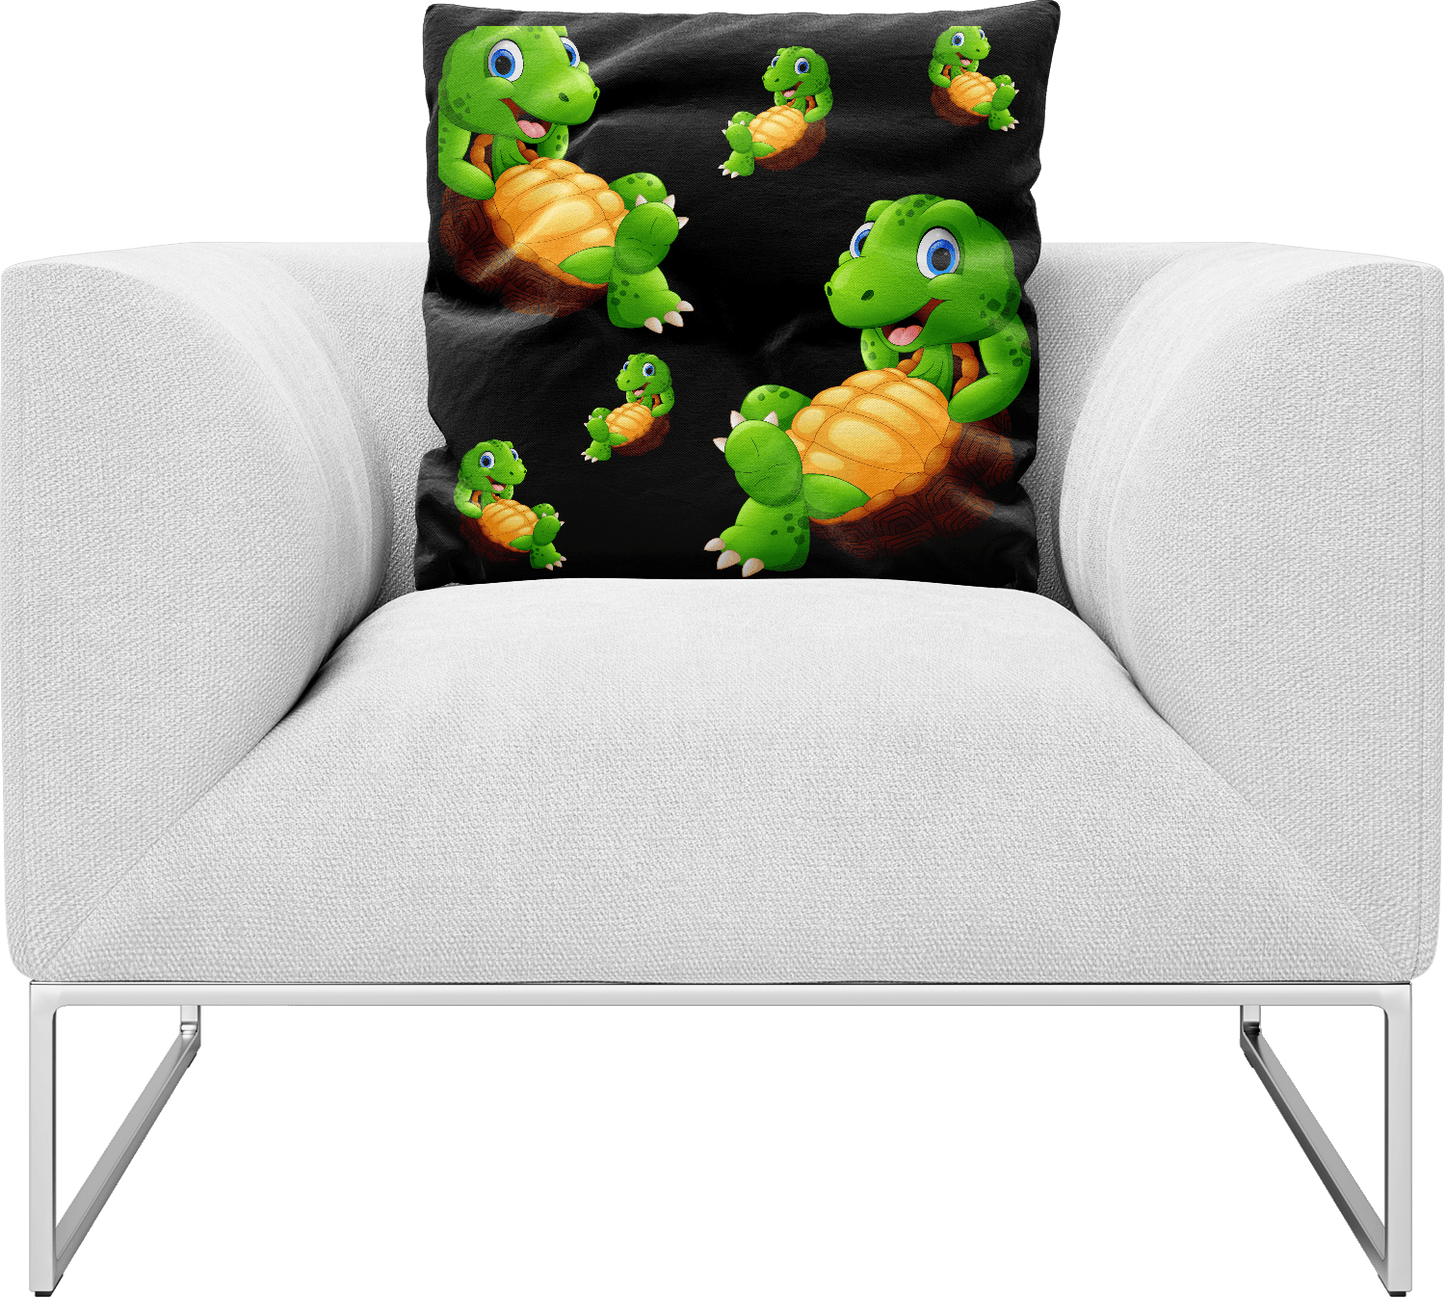 Top Turtle Pillows Cushions - fungear.com.au